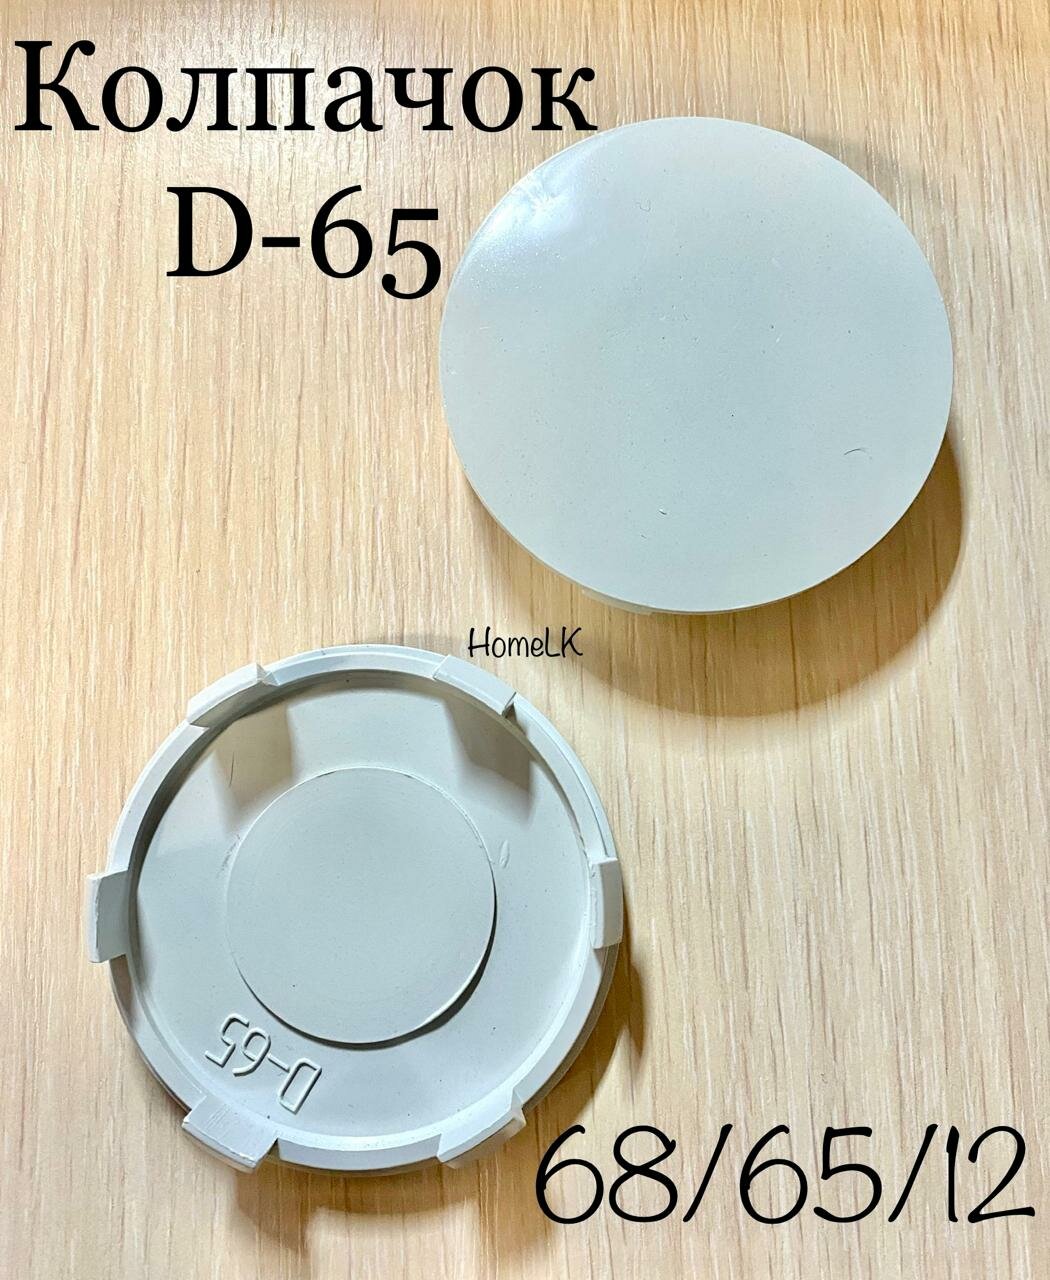 Колпачок заглушка для дисков D-65 68/65/12 светлый сфера 1 шт